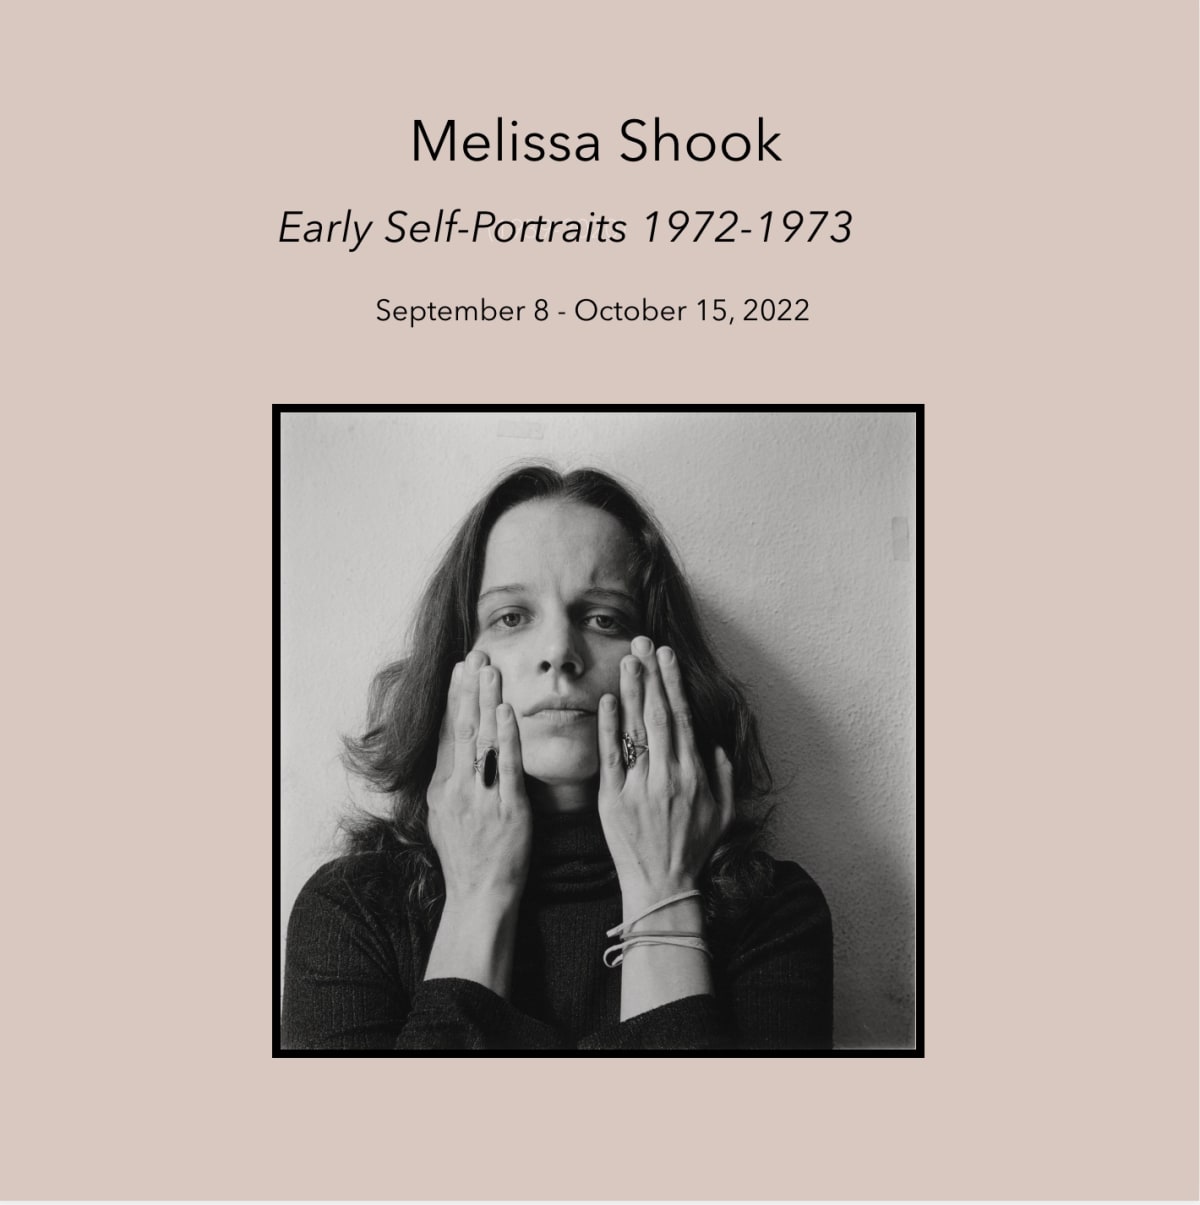 Melissa Shook: Early Self-Portraits 1972-1973